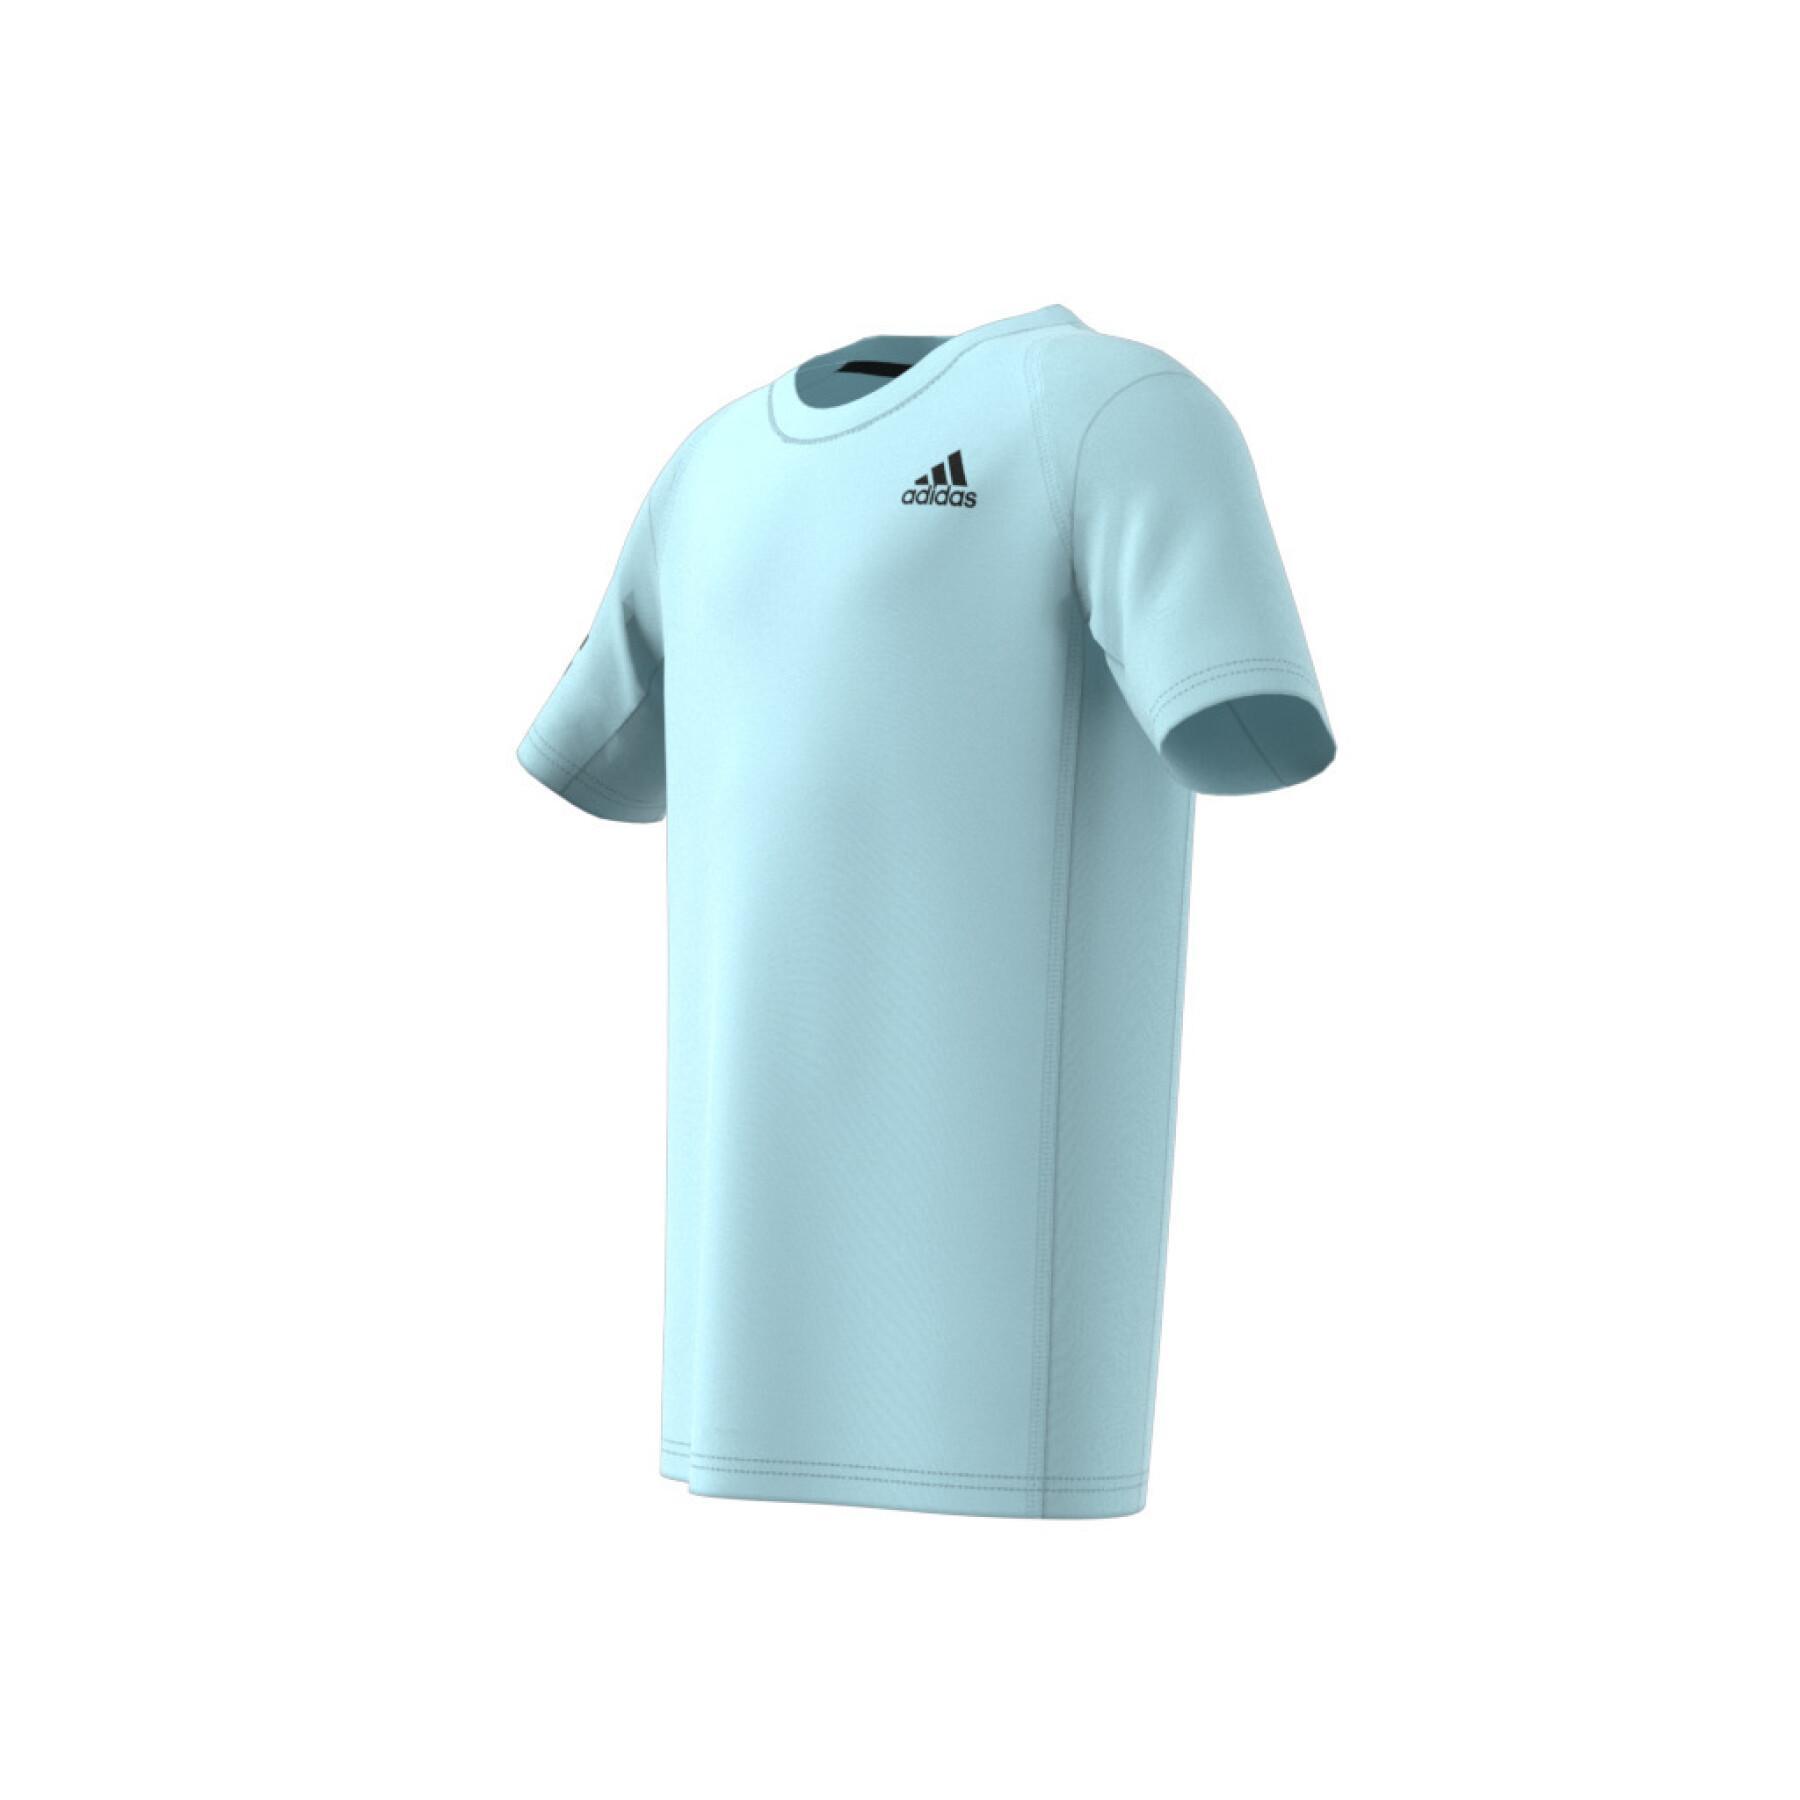 Camiseta del club de tenis con 3 rayas para niños adidas